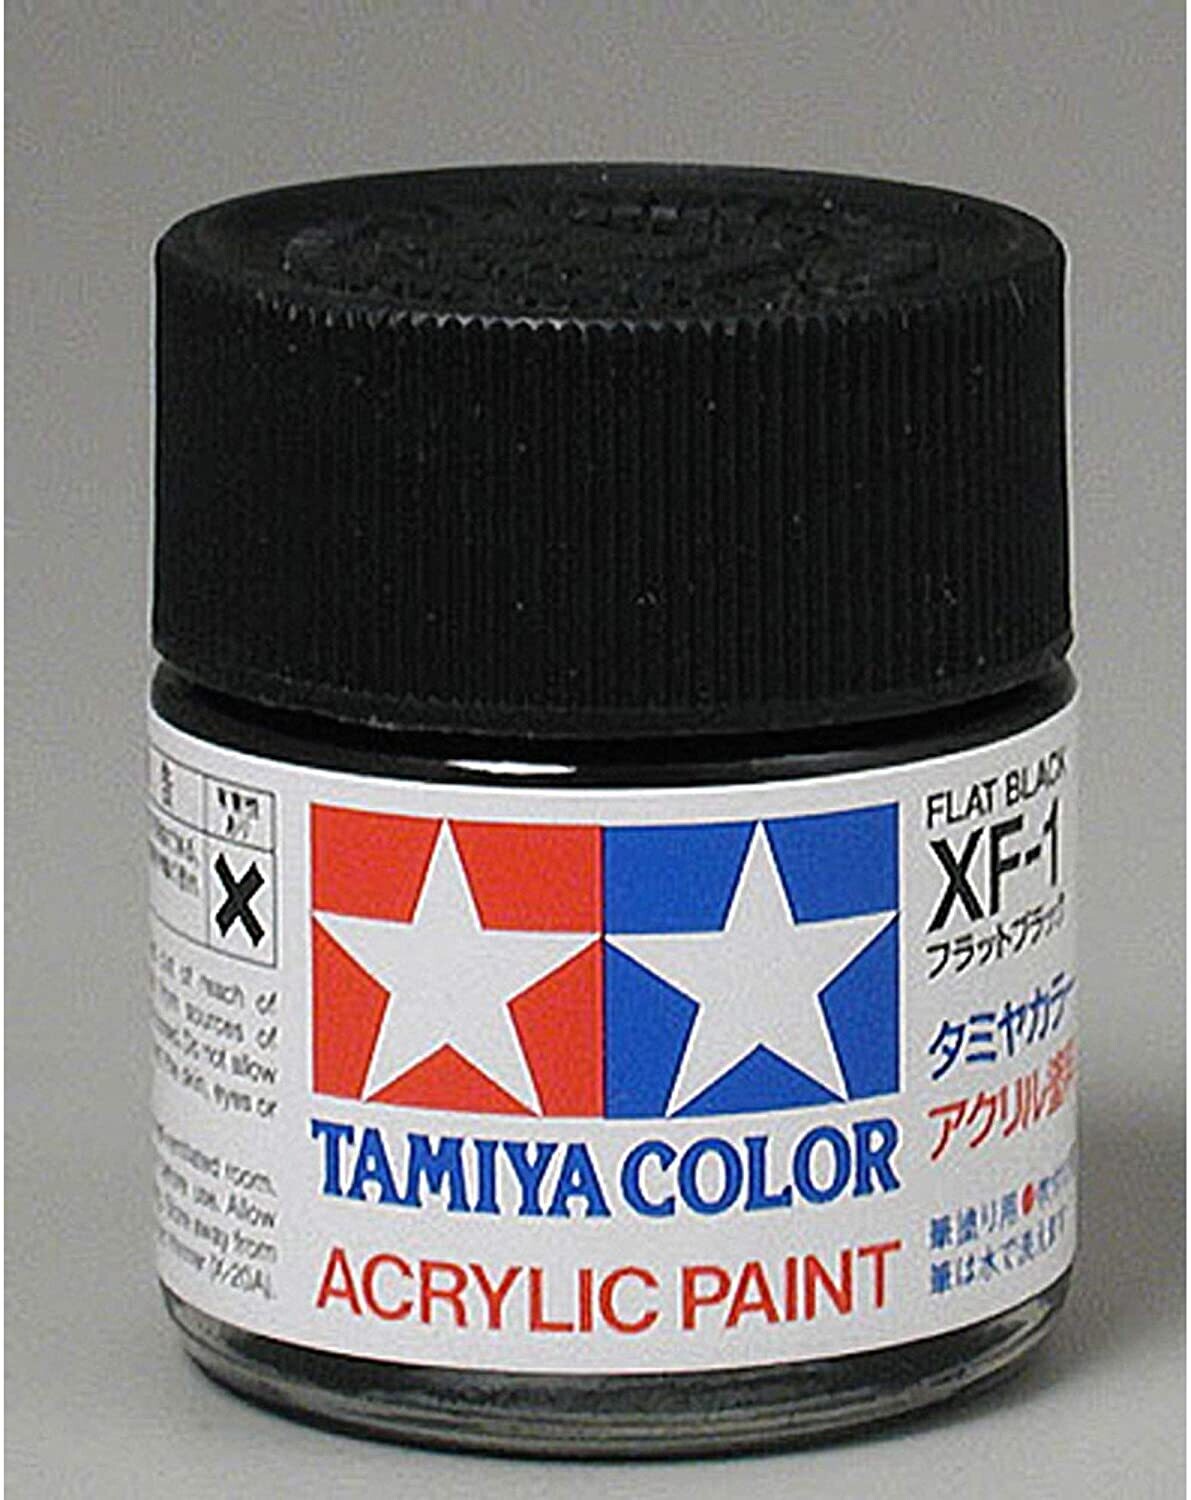 Tamiya Acrylic X-1 Black Paint